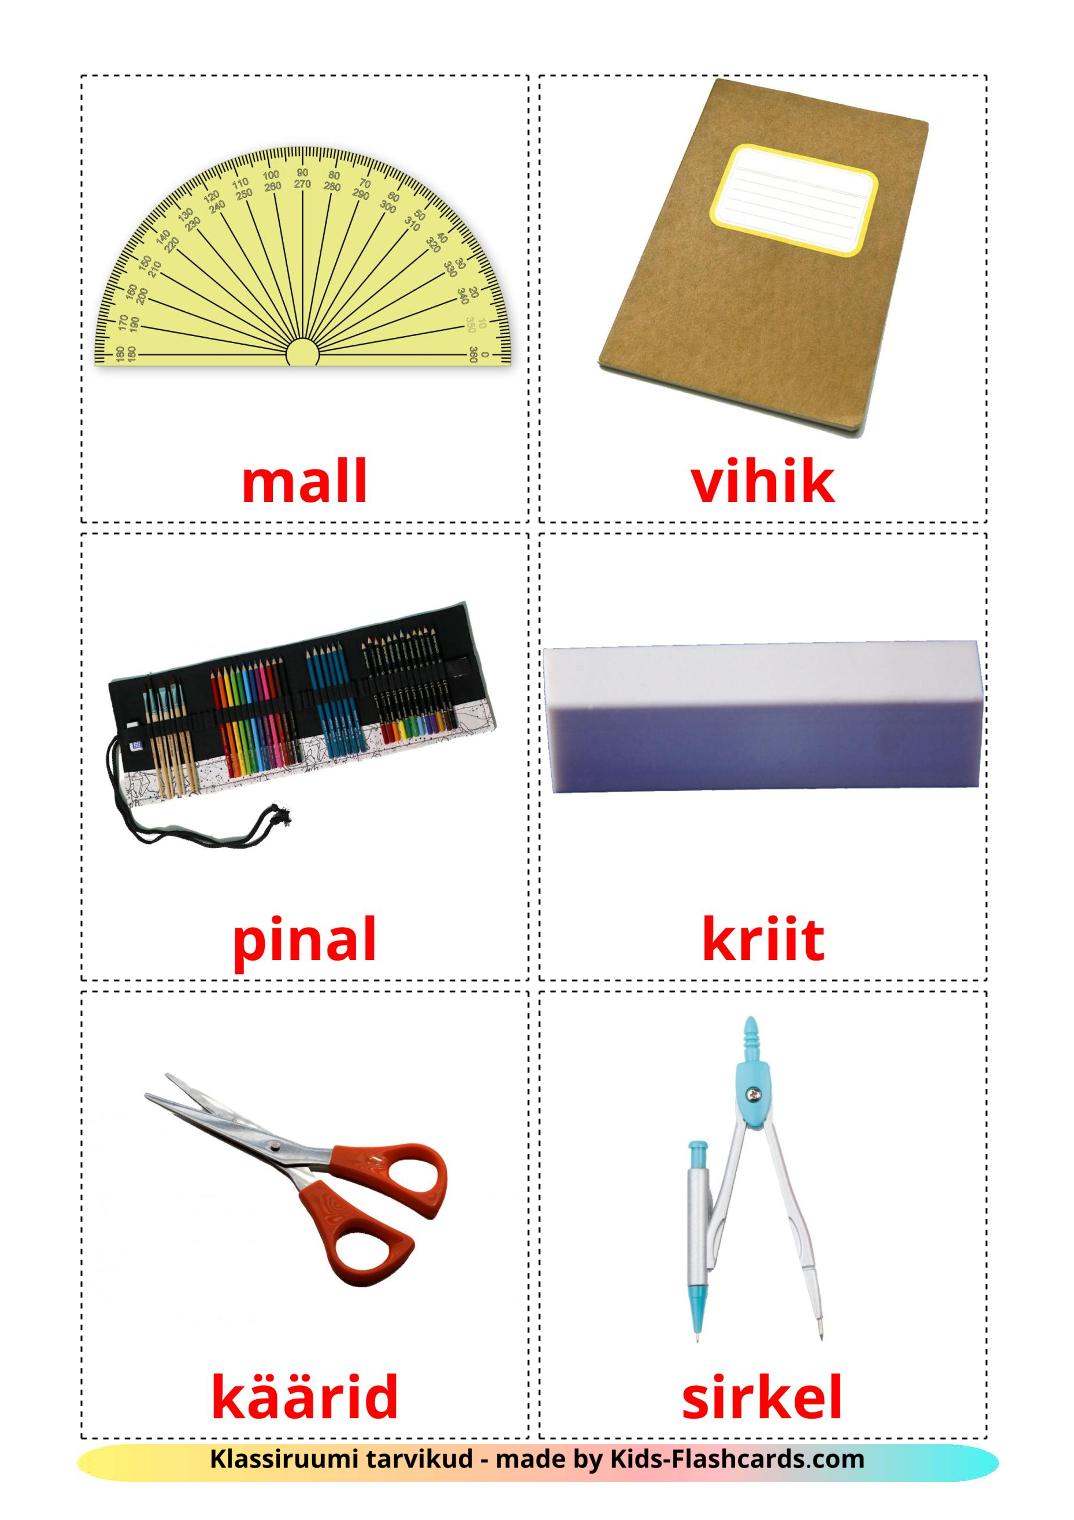 Objetos de sala de aula - 36 Flashcards estonianoes gratuitos para impressão